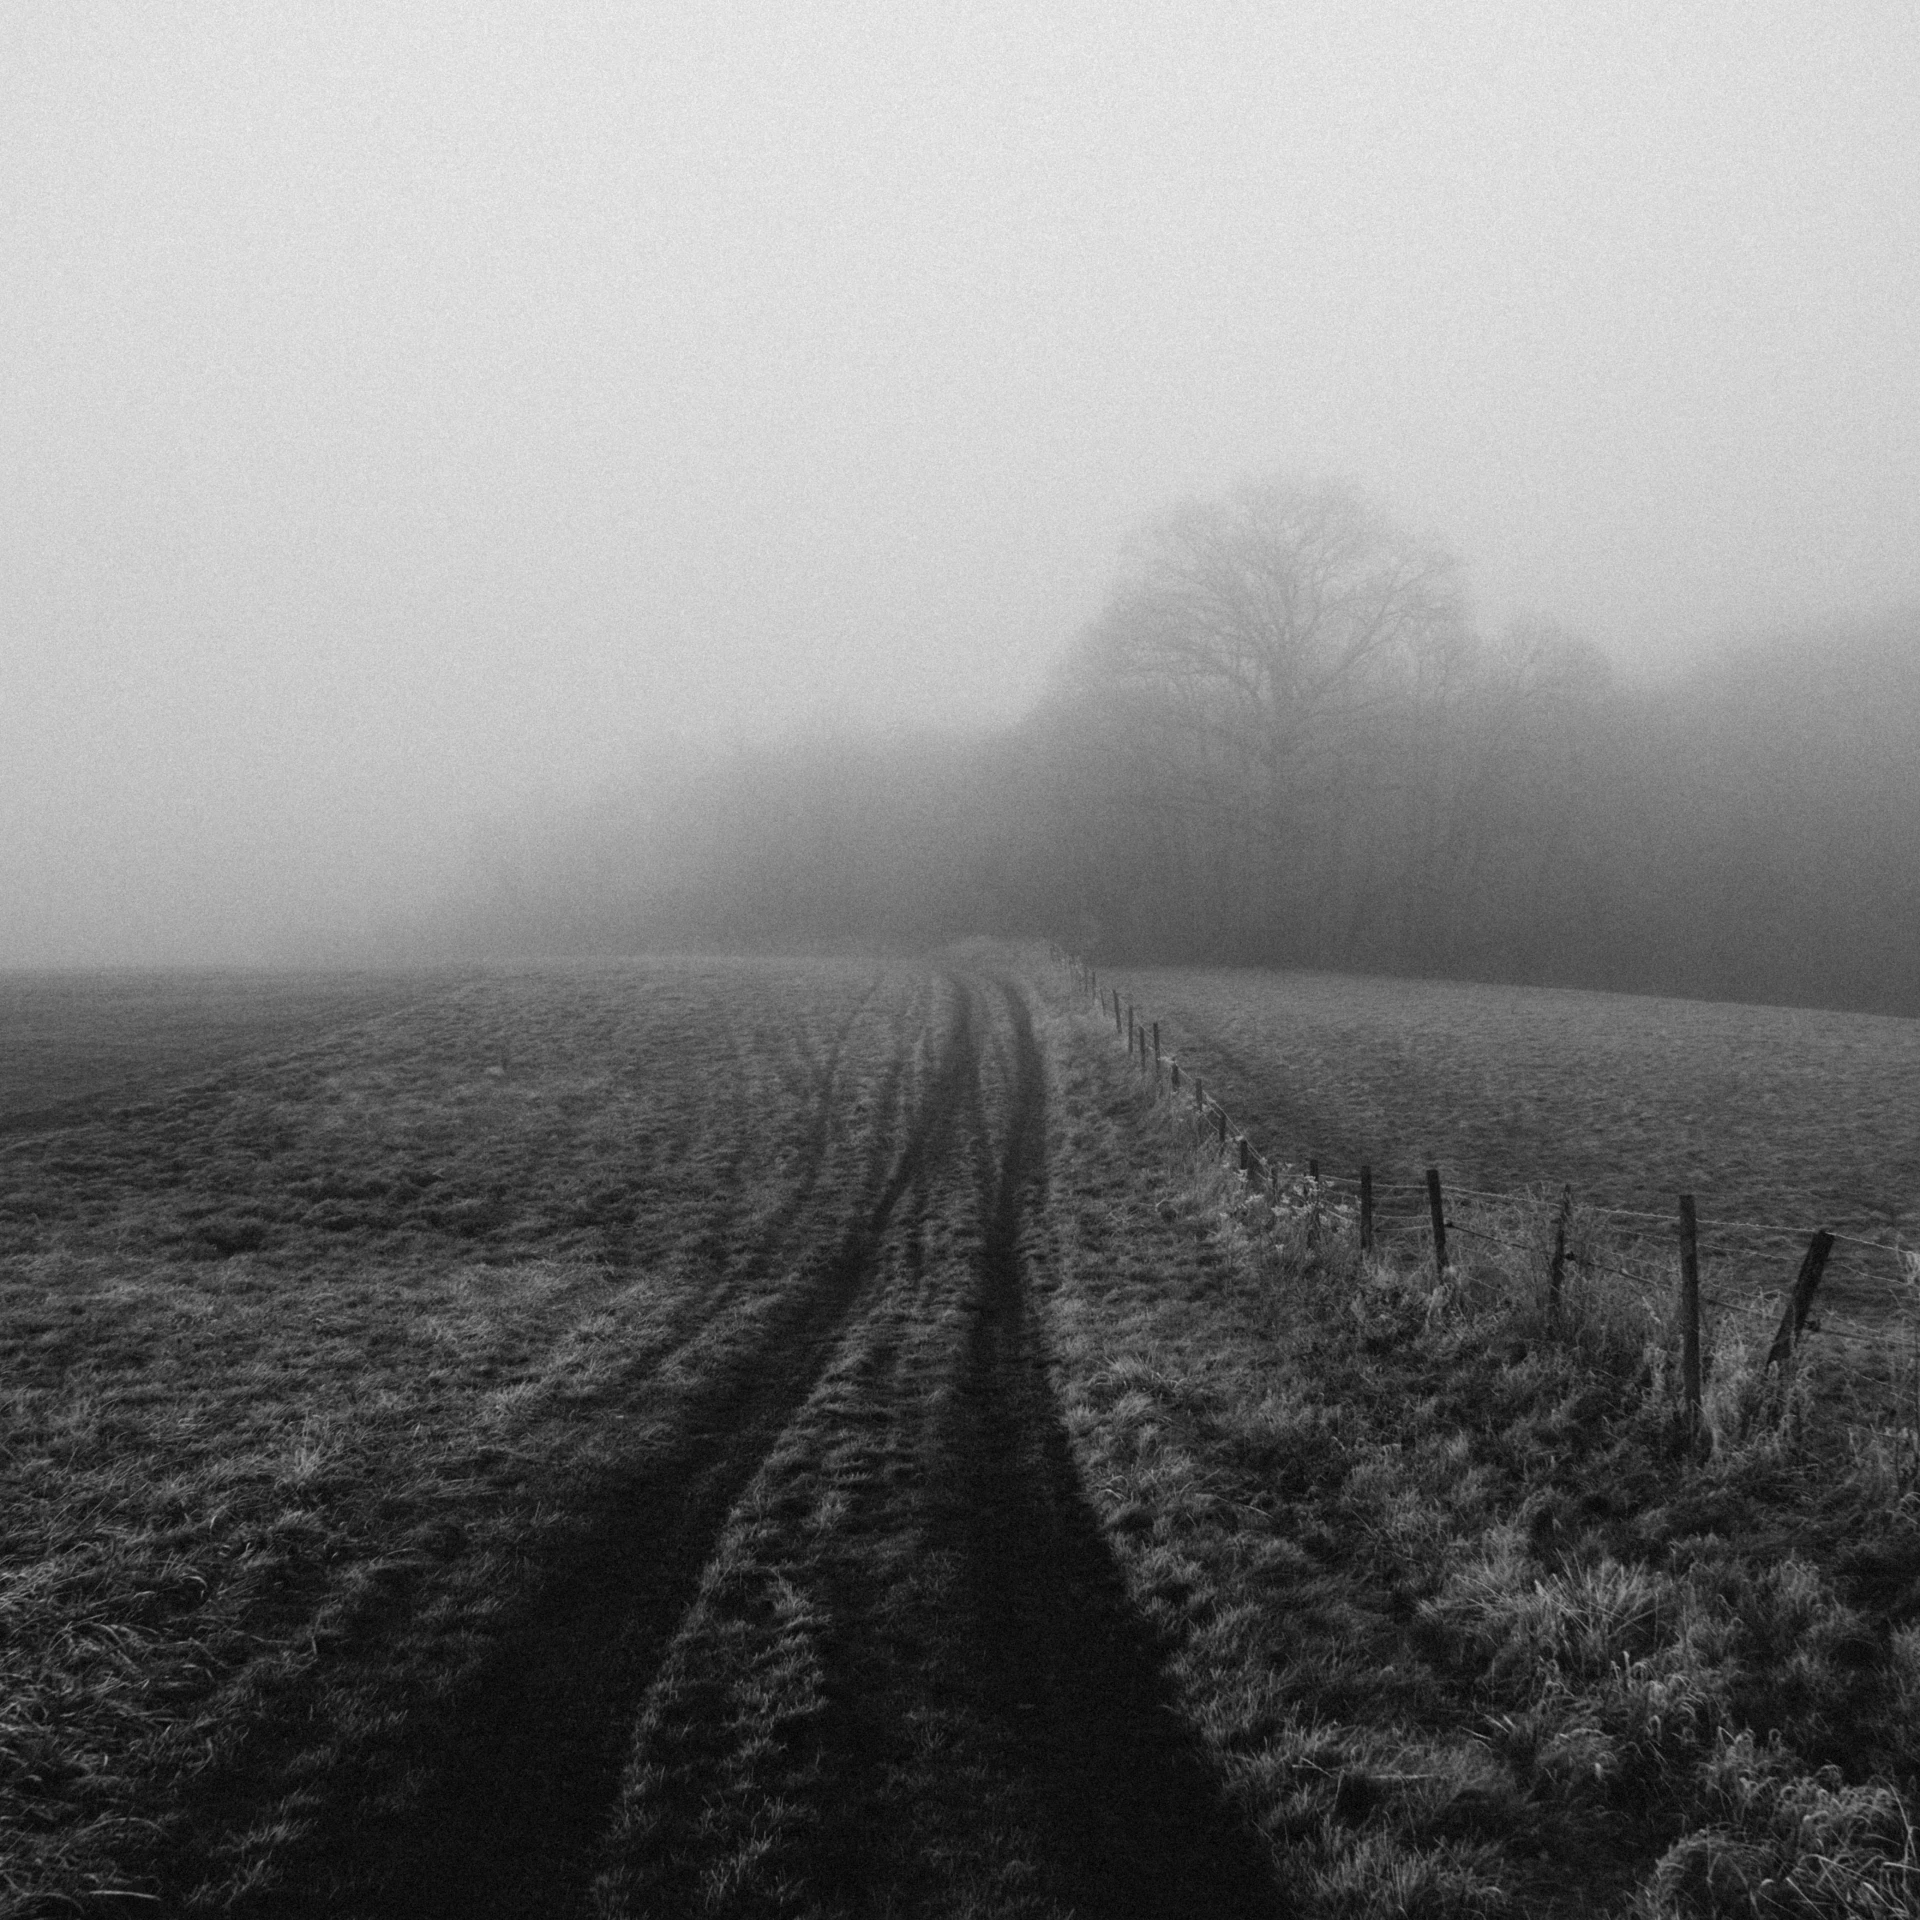 fog and mist over farmland on an open plain